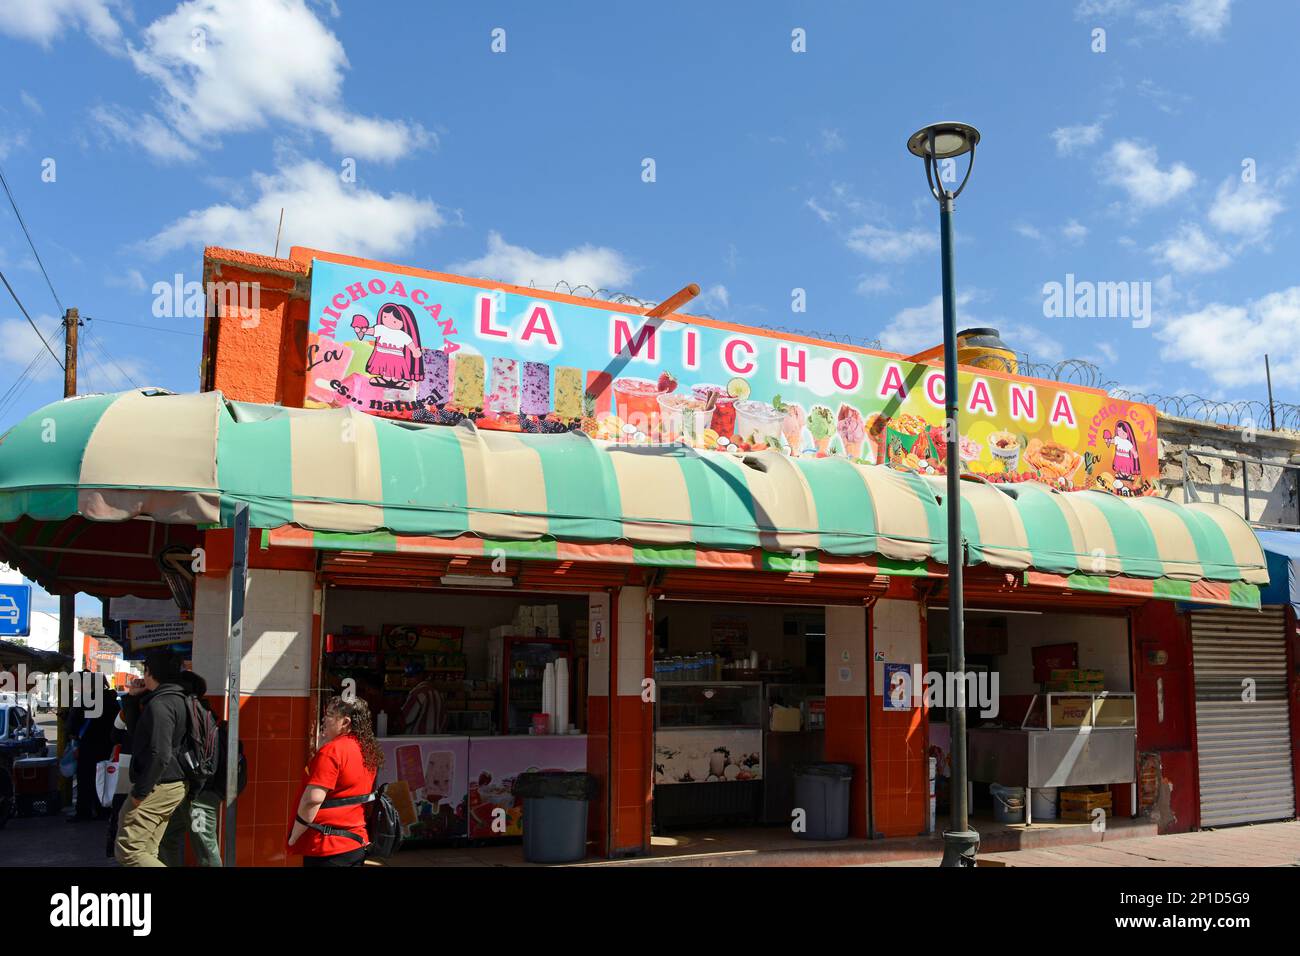 La Michoacana restaurant in the shopping district in Hermosillo, Mexico Stock Photo